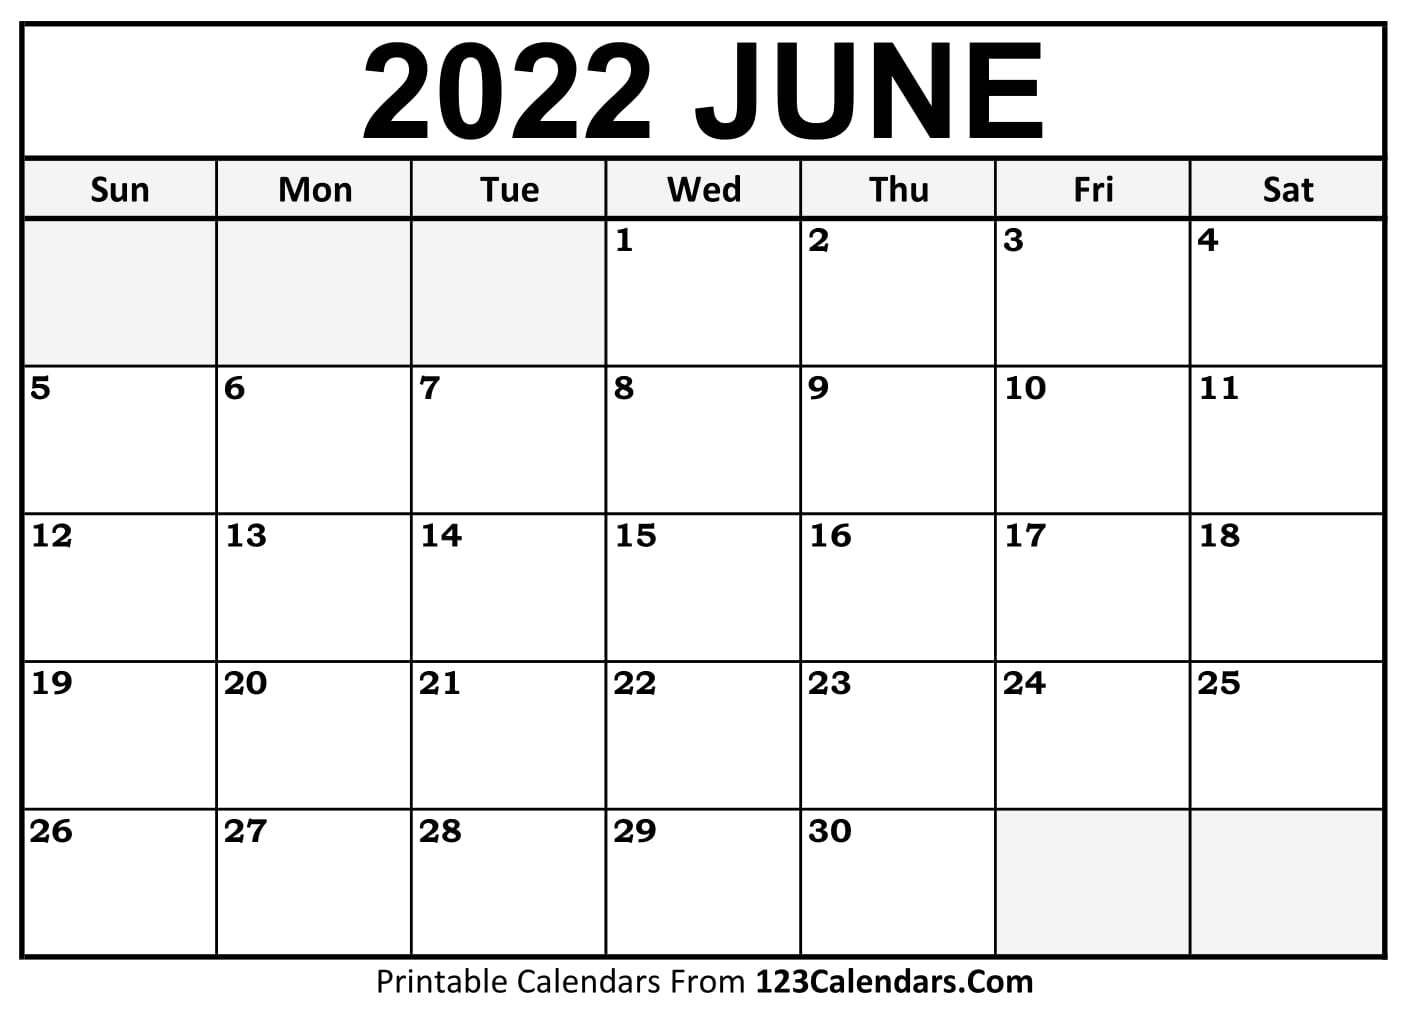 Printable 2022 June Calendar Printable June 2022 Calendar Templates - 123Calendars.com